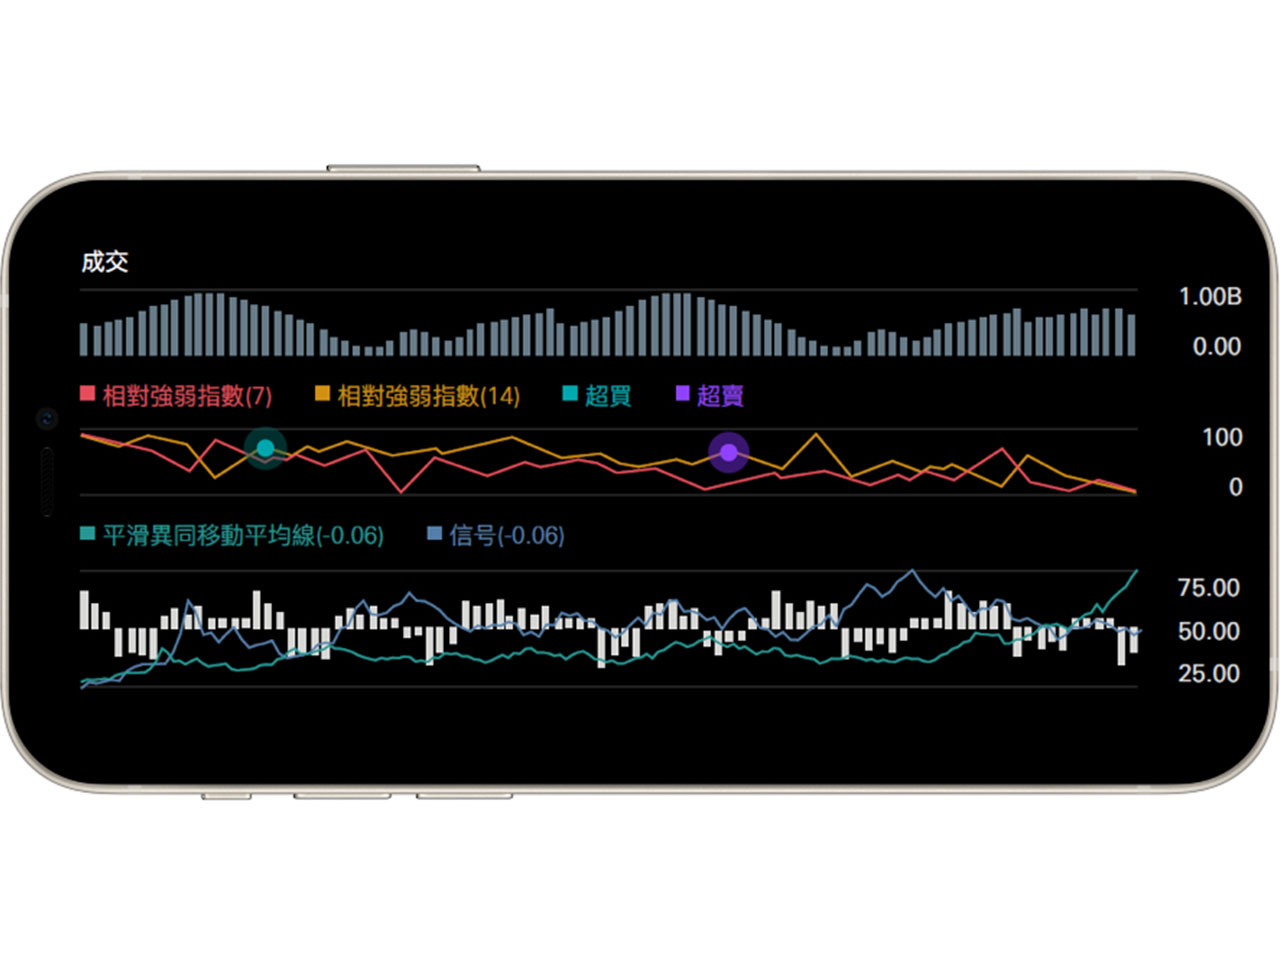 香港滙豐流動理財應用程式畫面截圖；顯示股價圖表